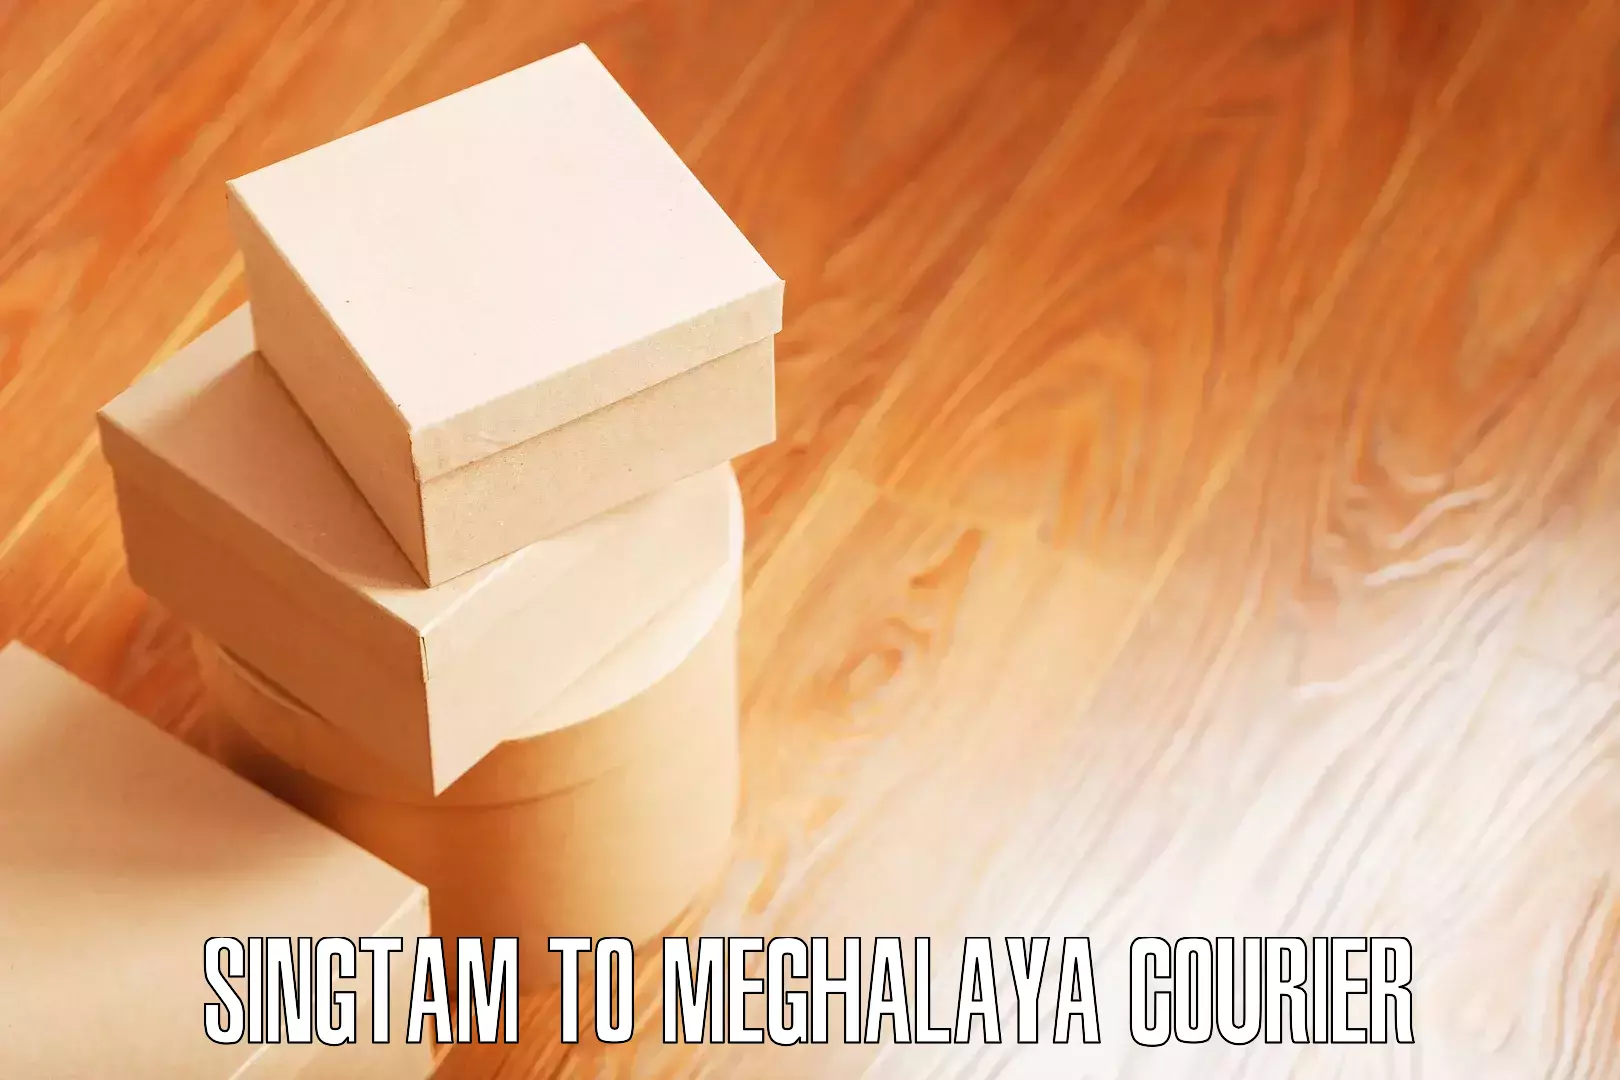 Nationwide furniture transport Singtam to Meghalaya